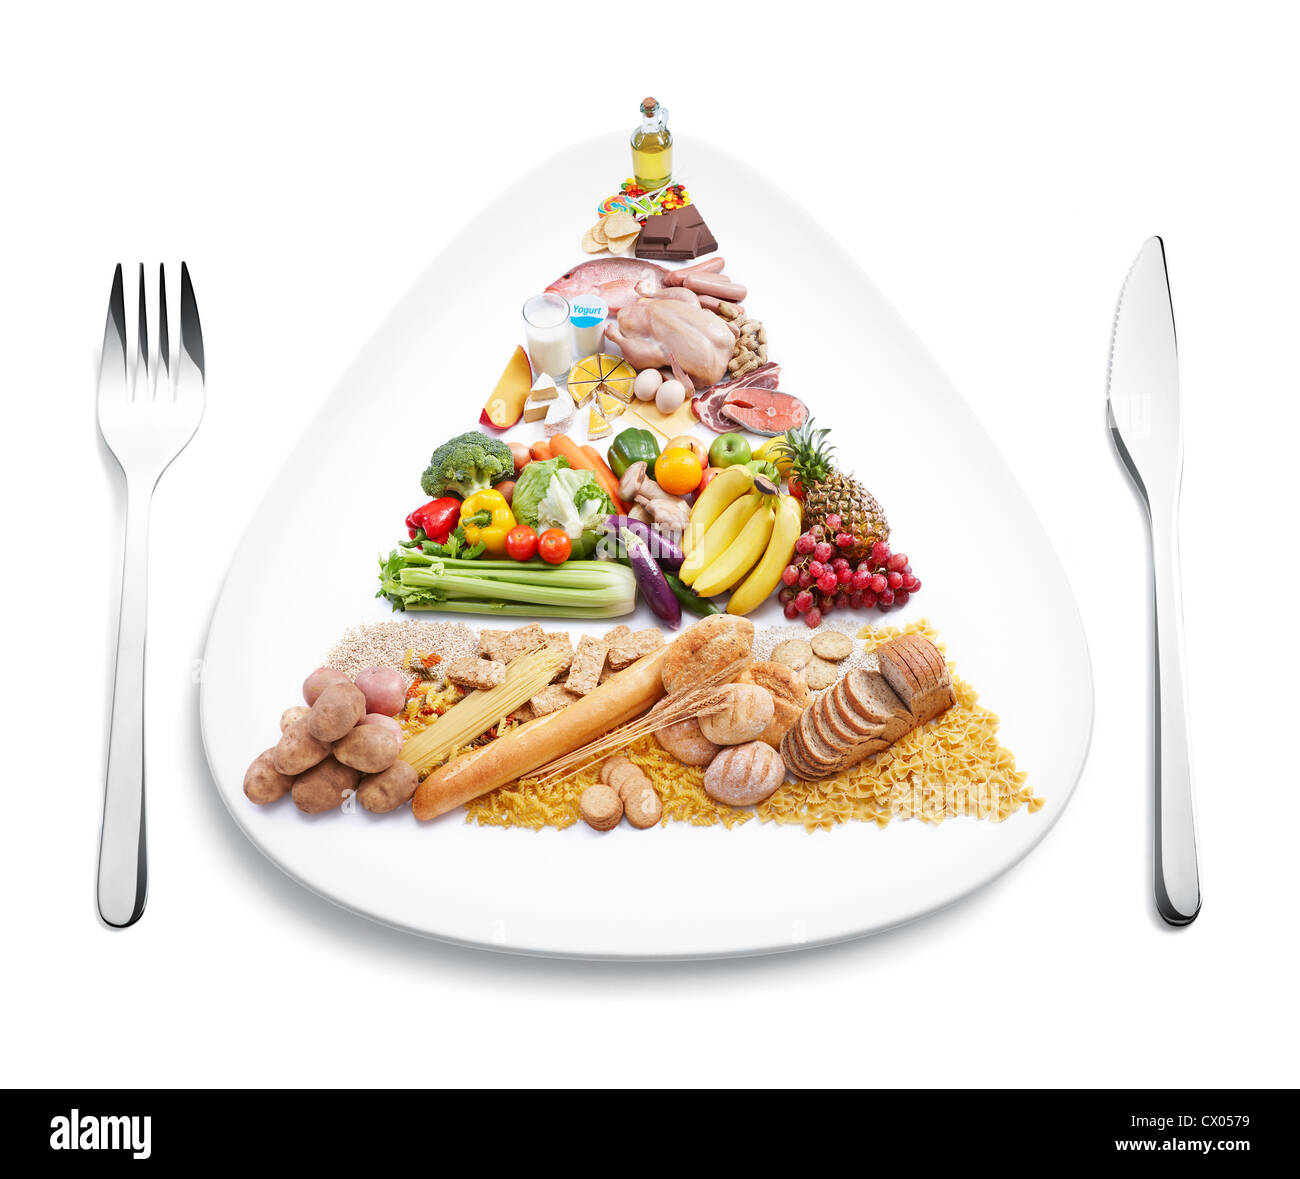 Pyramide des aliments sur la plaque avec fourchette et couteau Banque D'Images